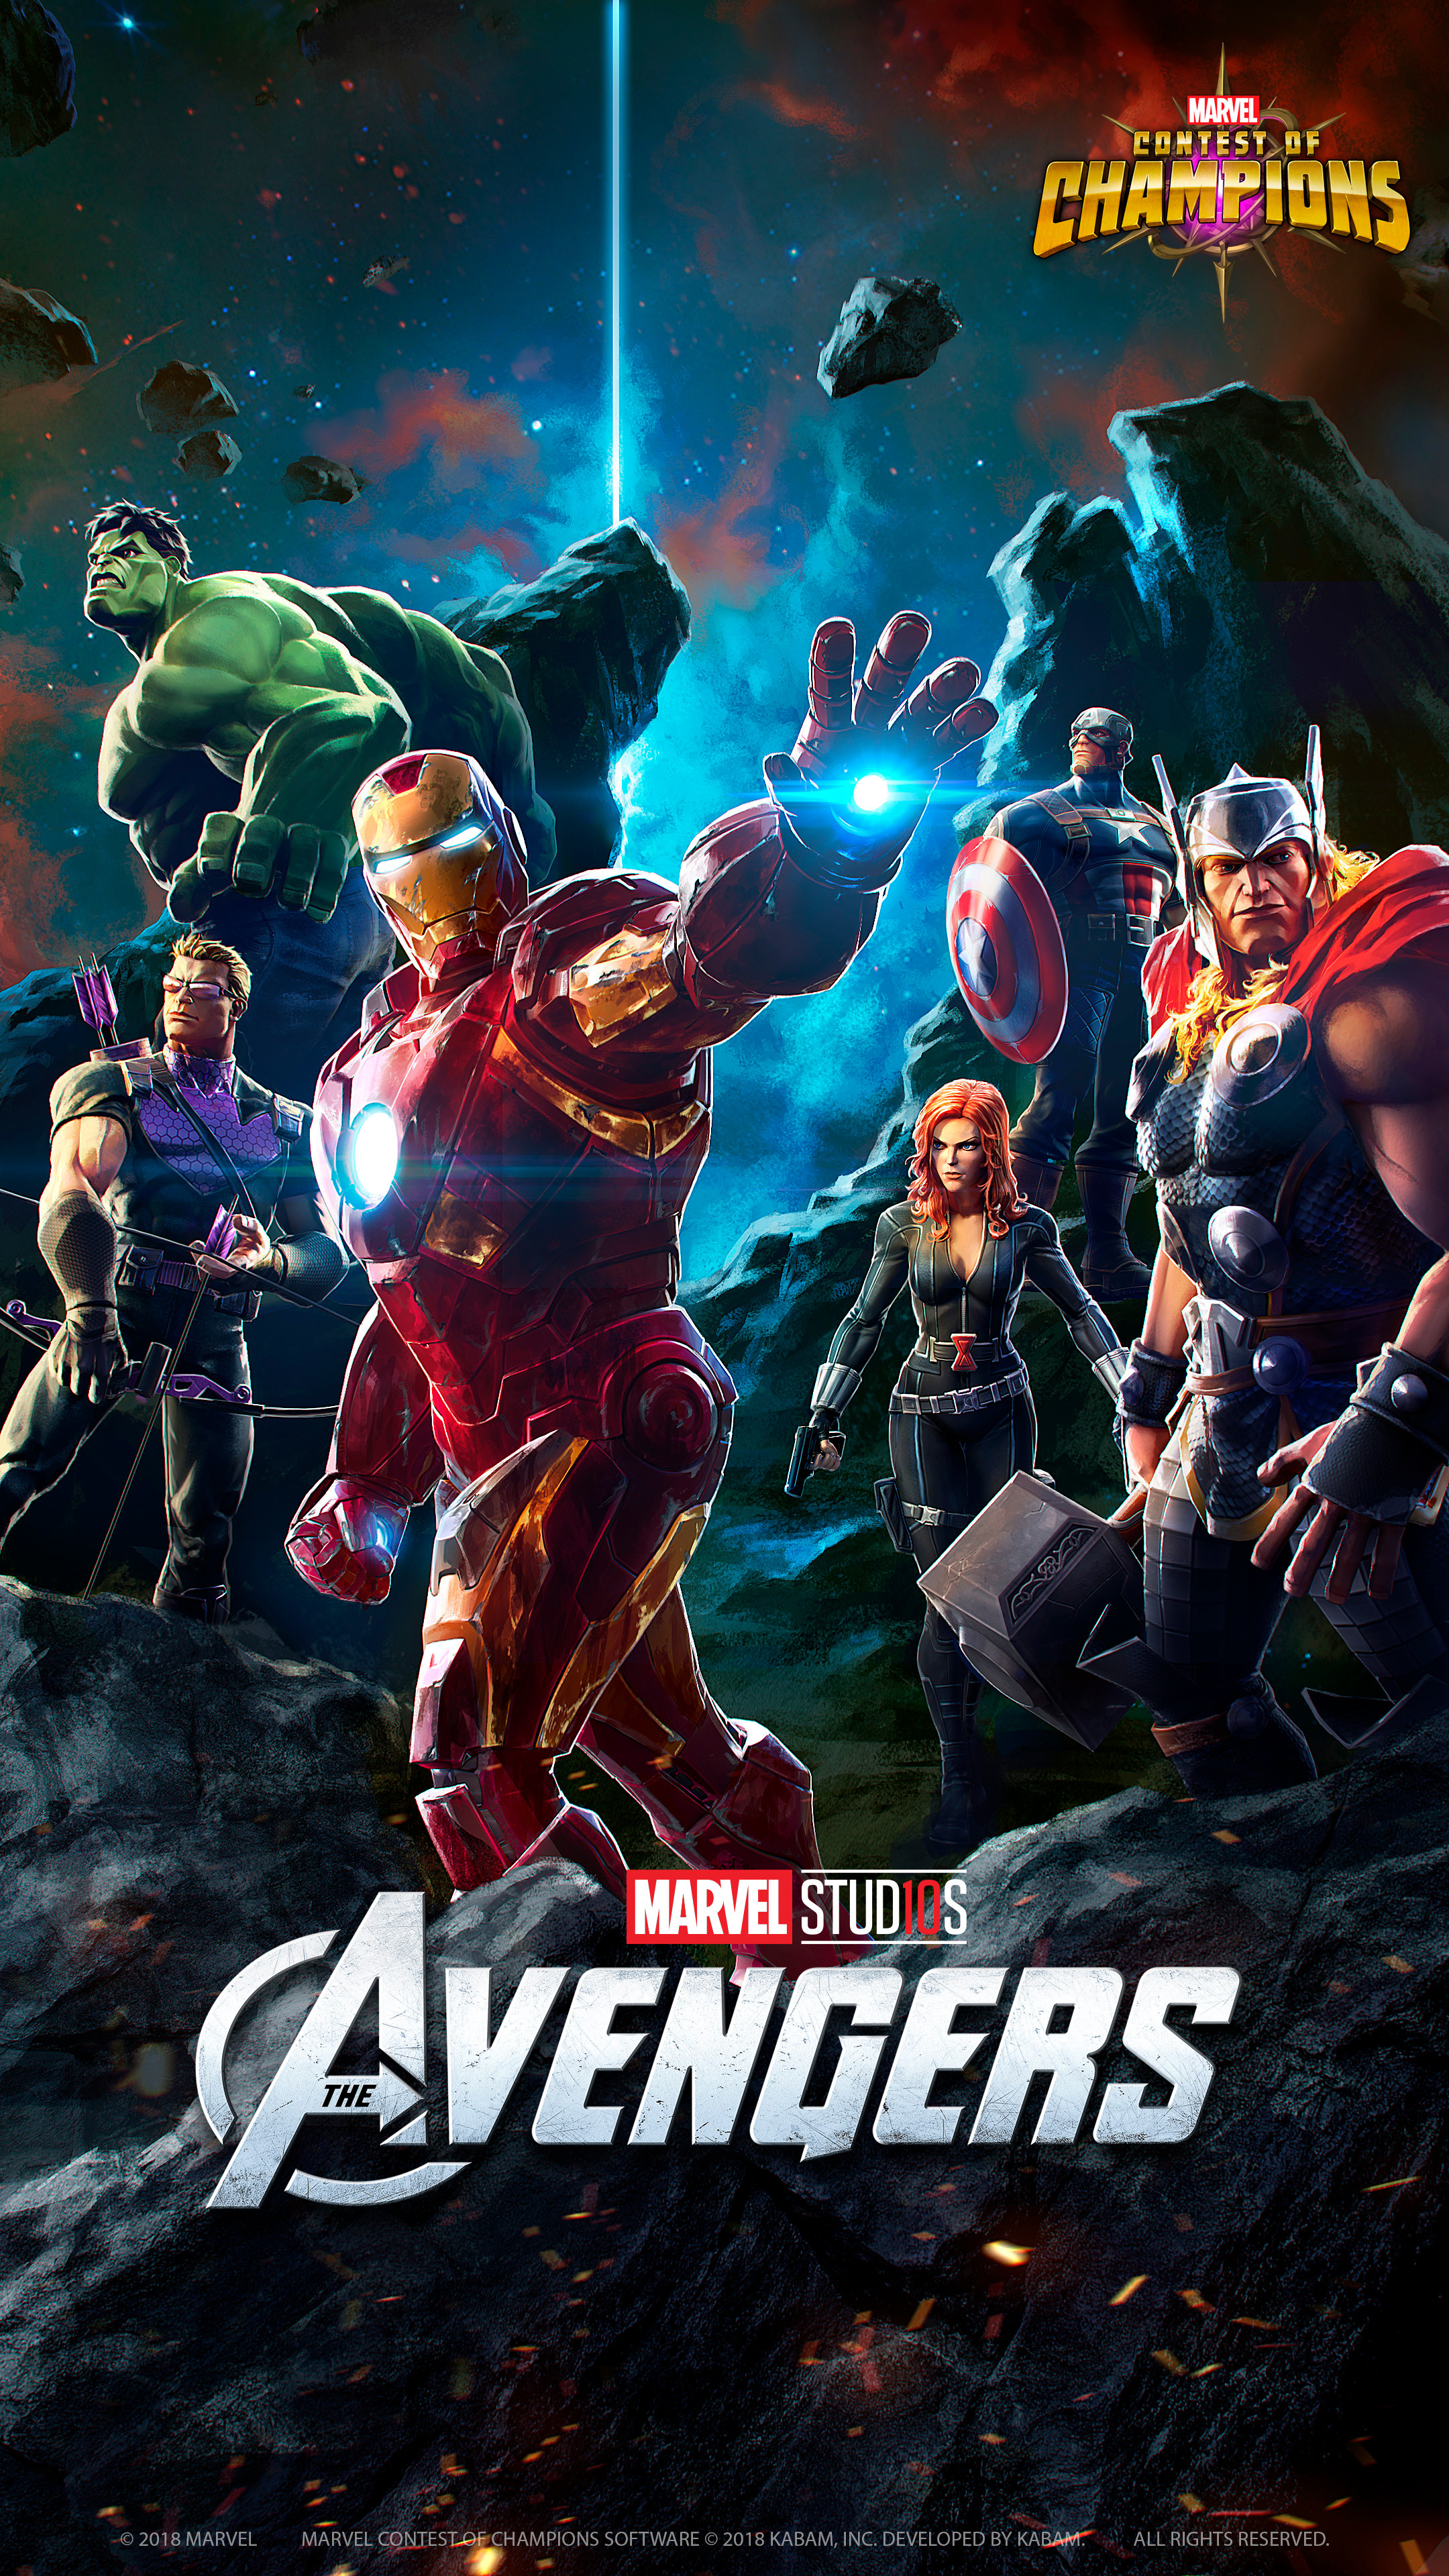 Avengers (2012) - Marvel studio 10 years anniversary poster